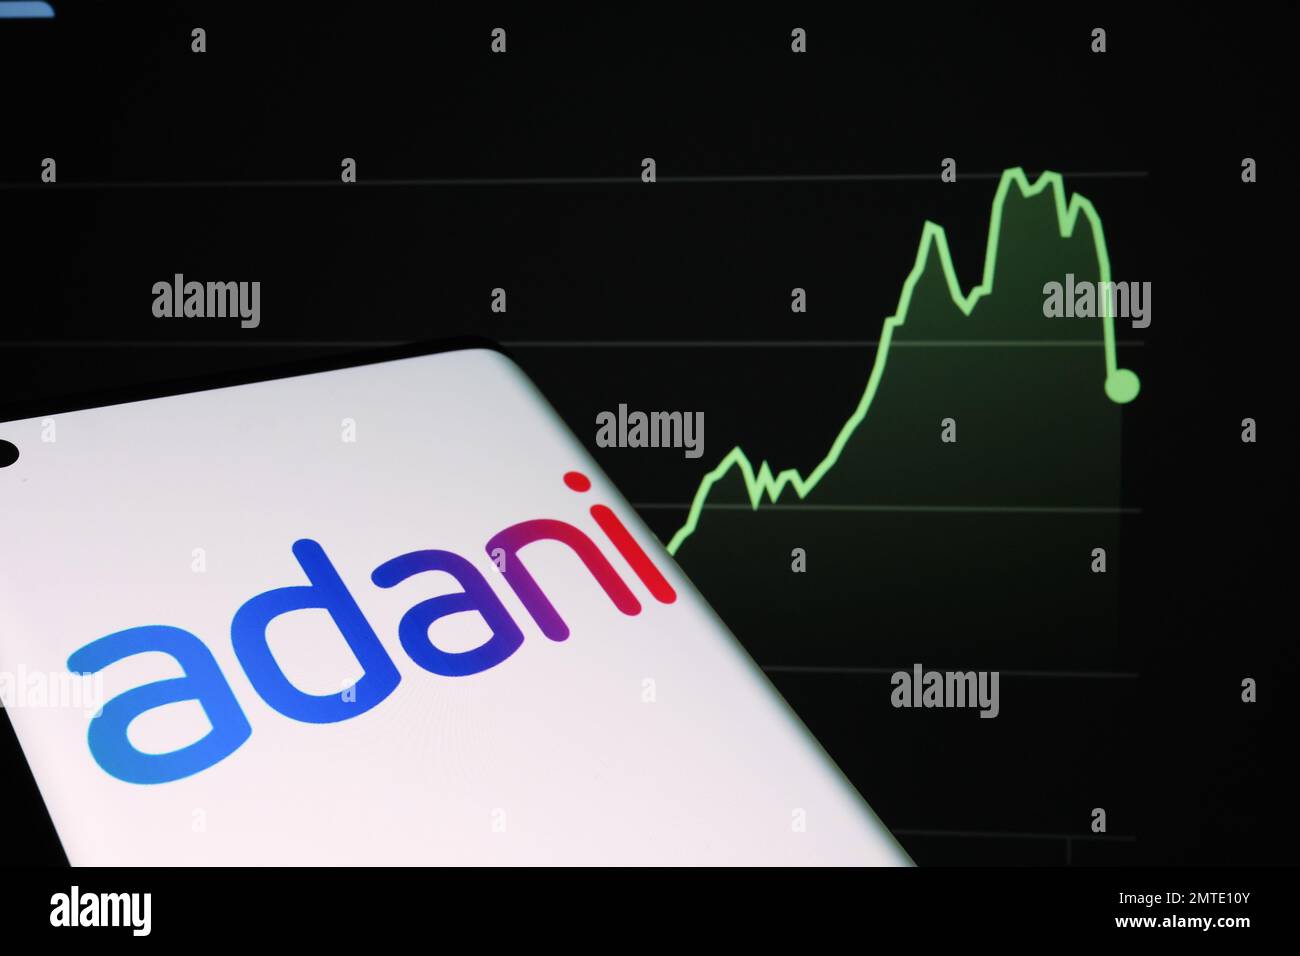 Logo der Adani Group auf dem Smartphone-Bildschirm und Diagramm des Aktienkurses des Unternehmens auf unscharfem Hintergrund. Reales Aktiendiagramm für ein Jahr Stockfoto